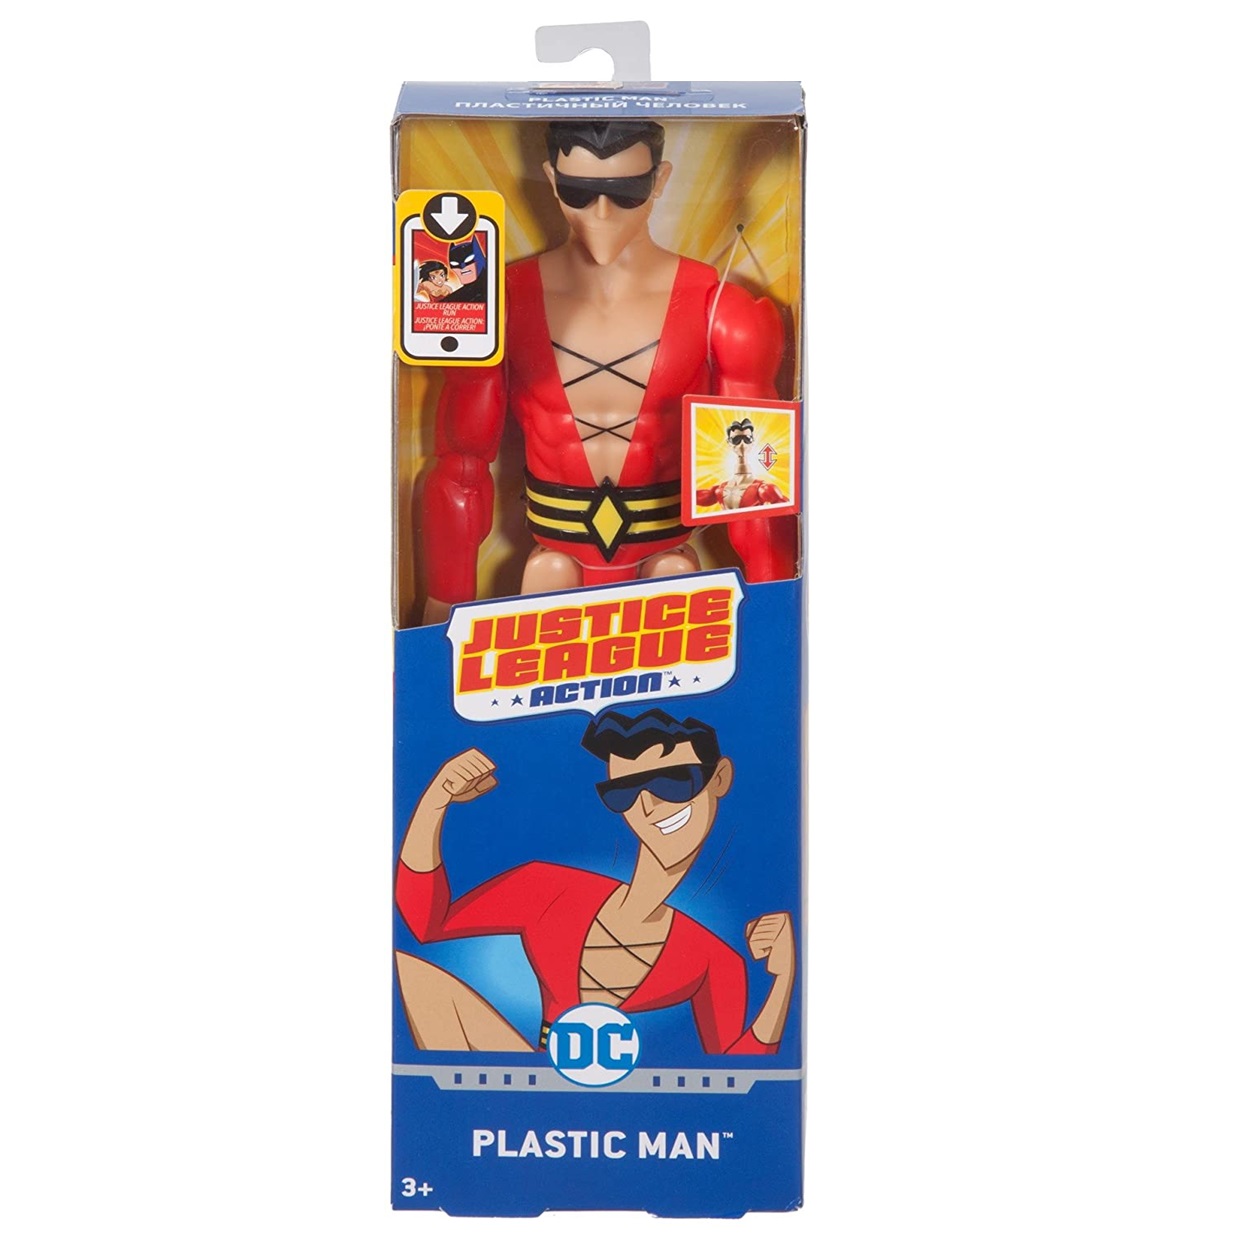 Plastic Man Figura Dc Justice League Action Mattel 12 PuLG